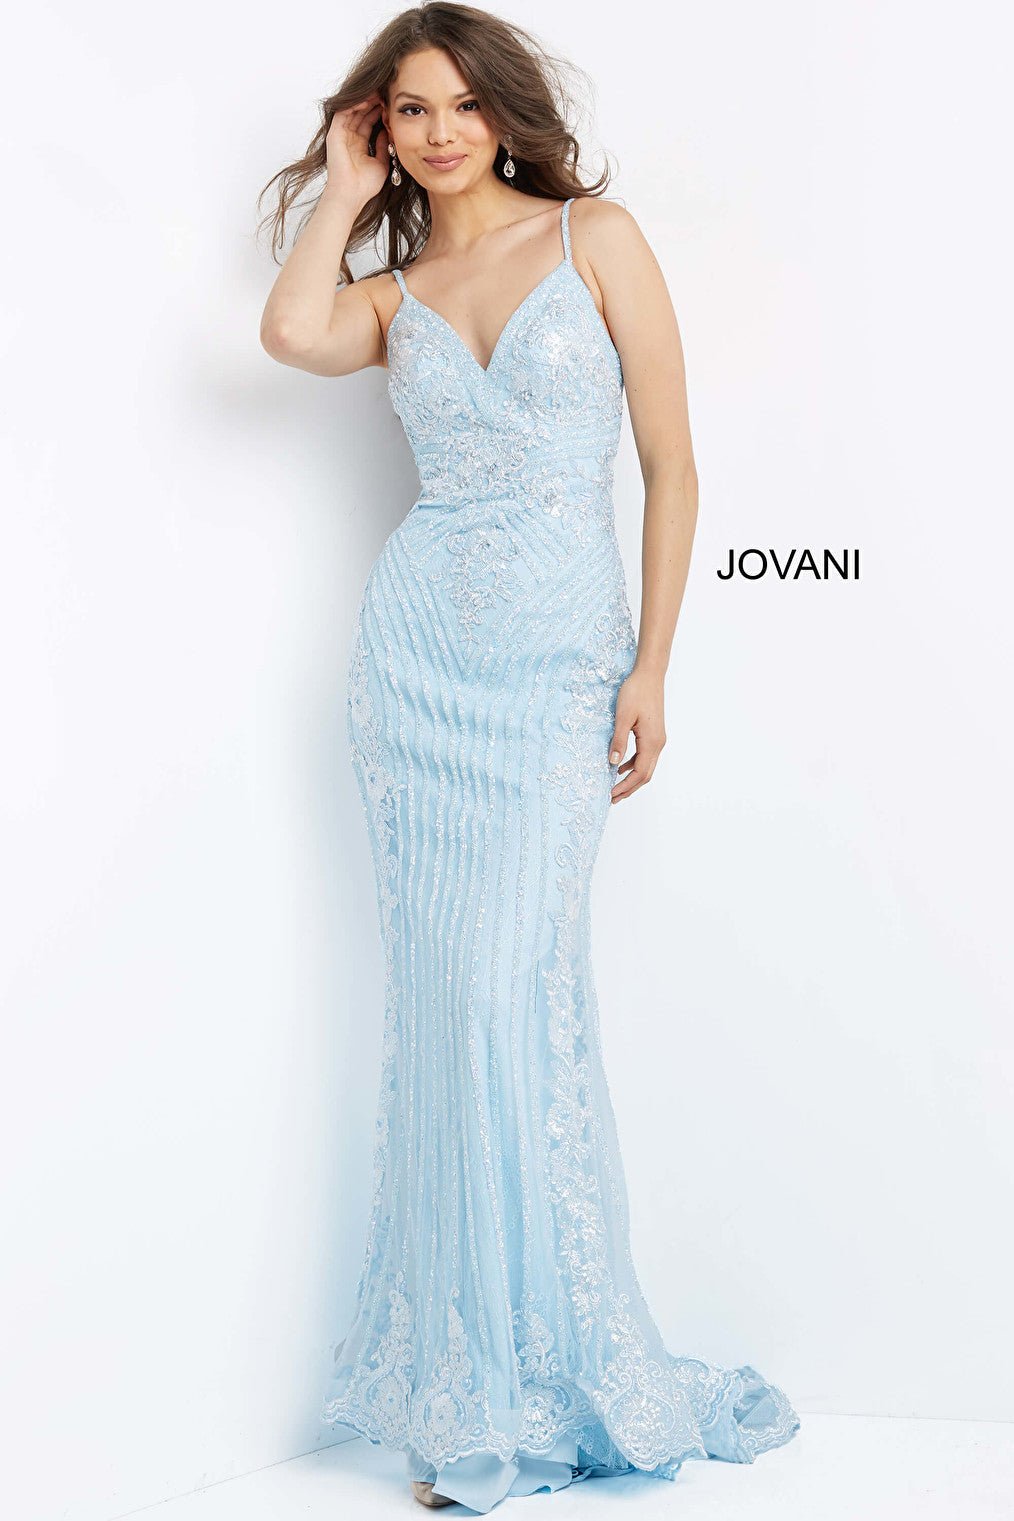 Light blue embellished dress Jovani 05752